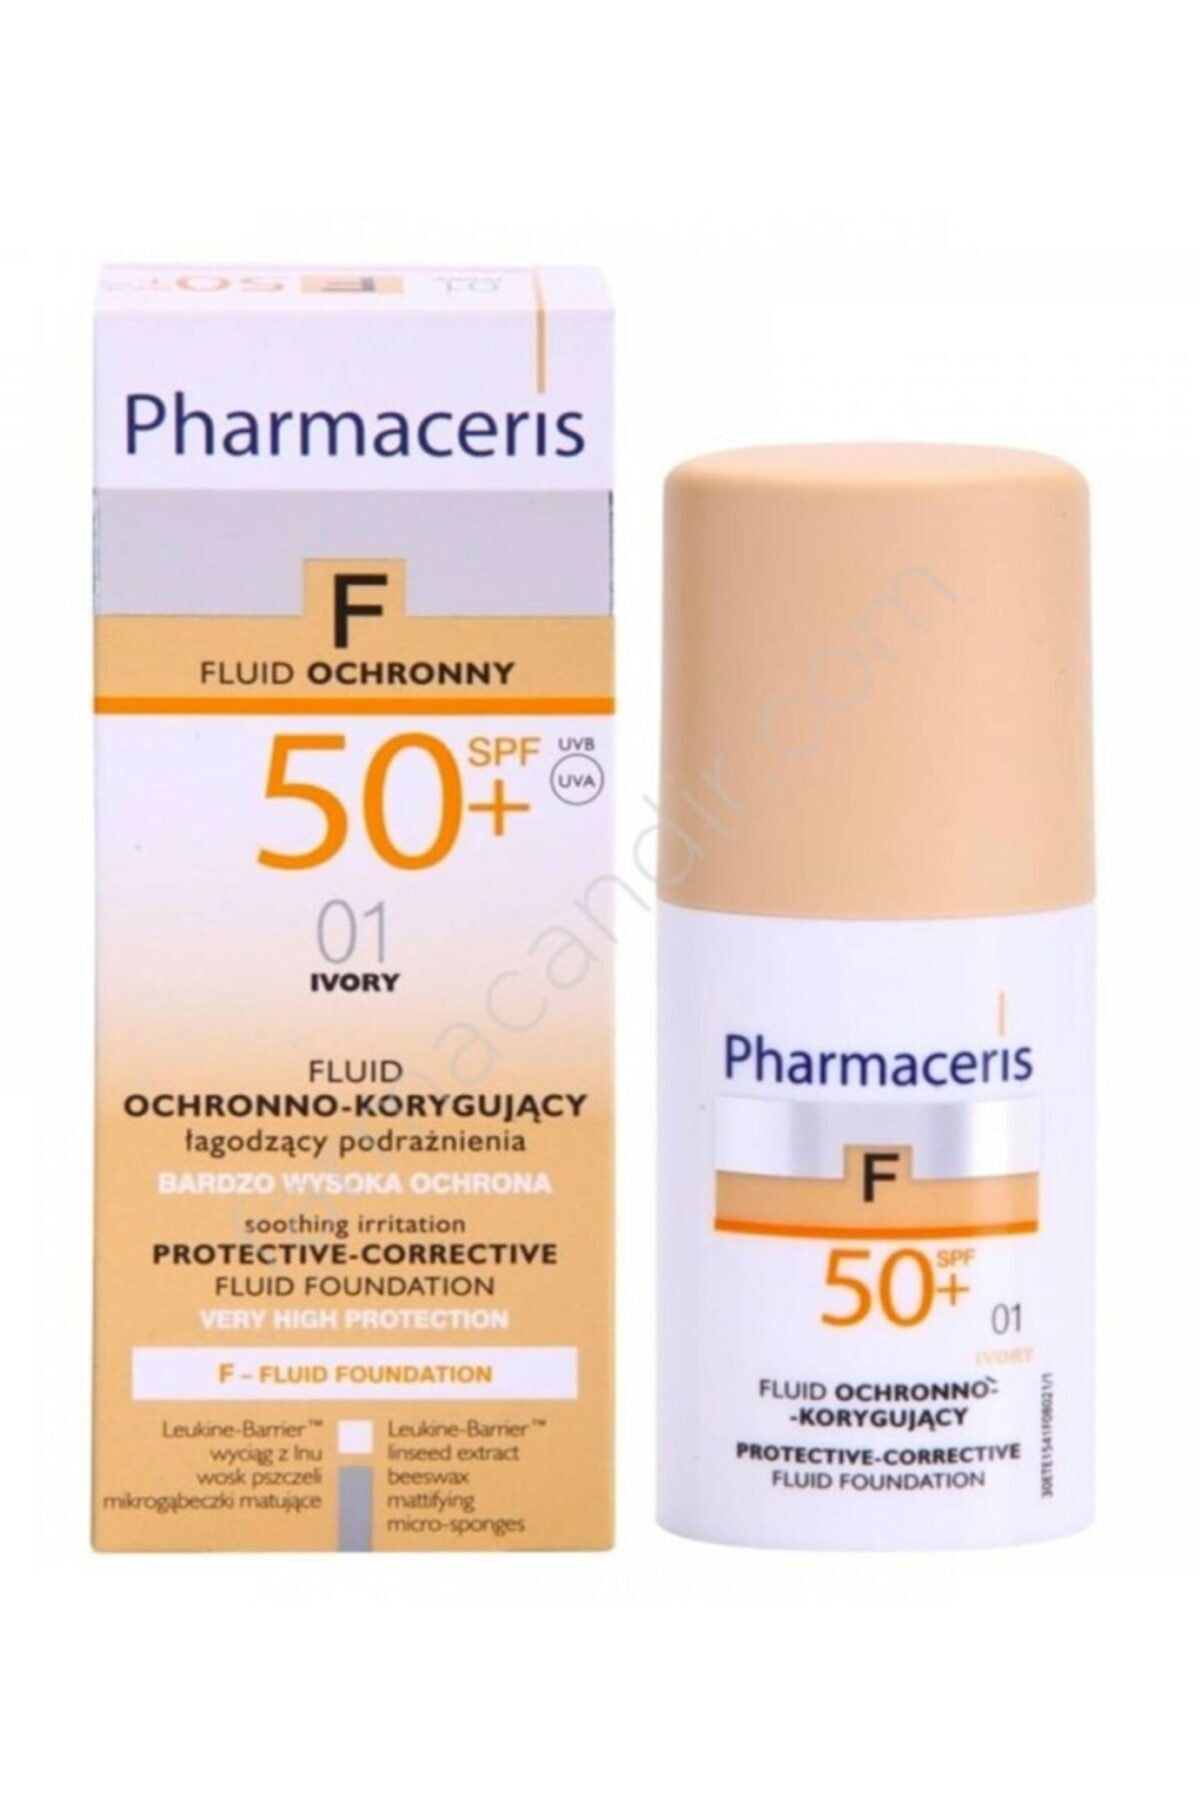 Pharmaceris Protective Corrective Fluid Foundation Spf 50 01